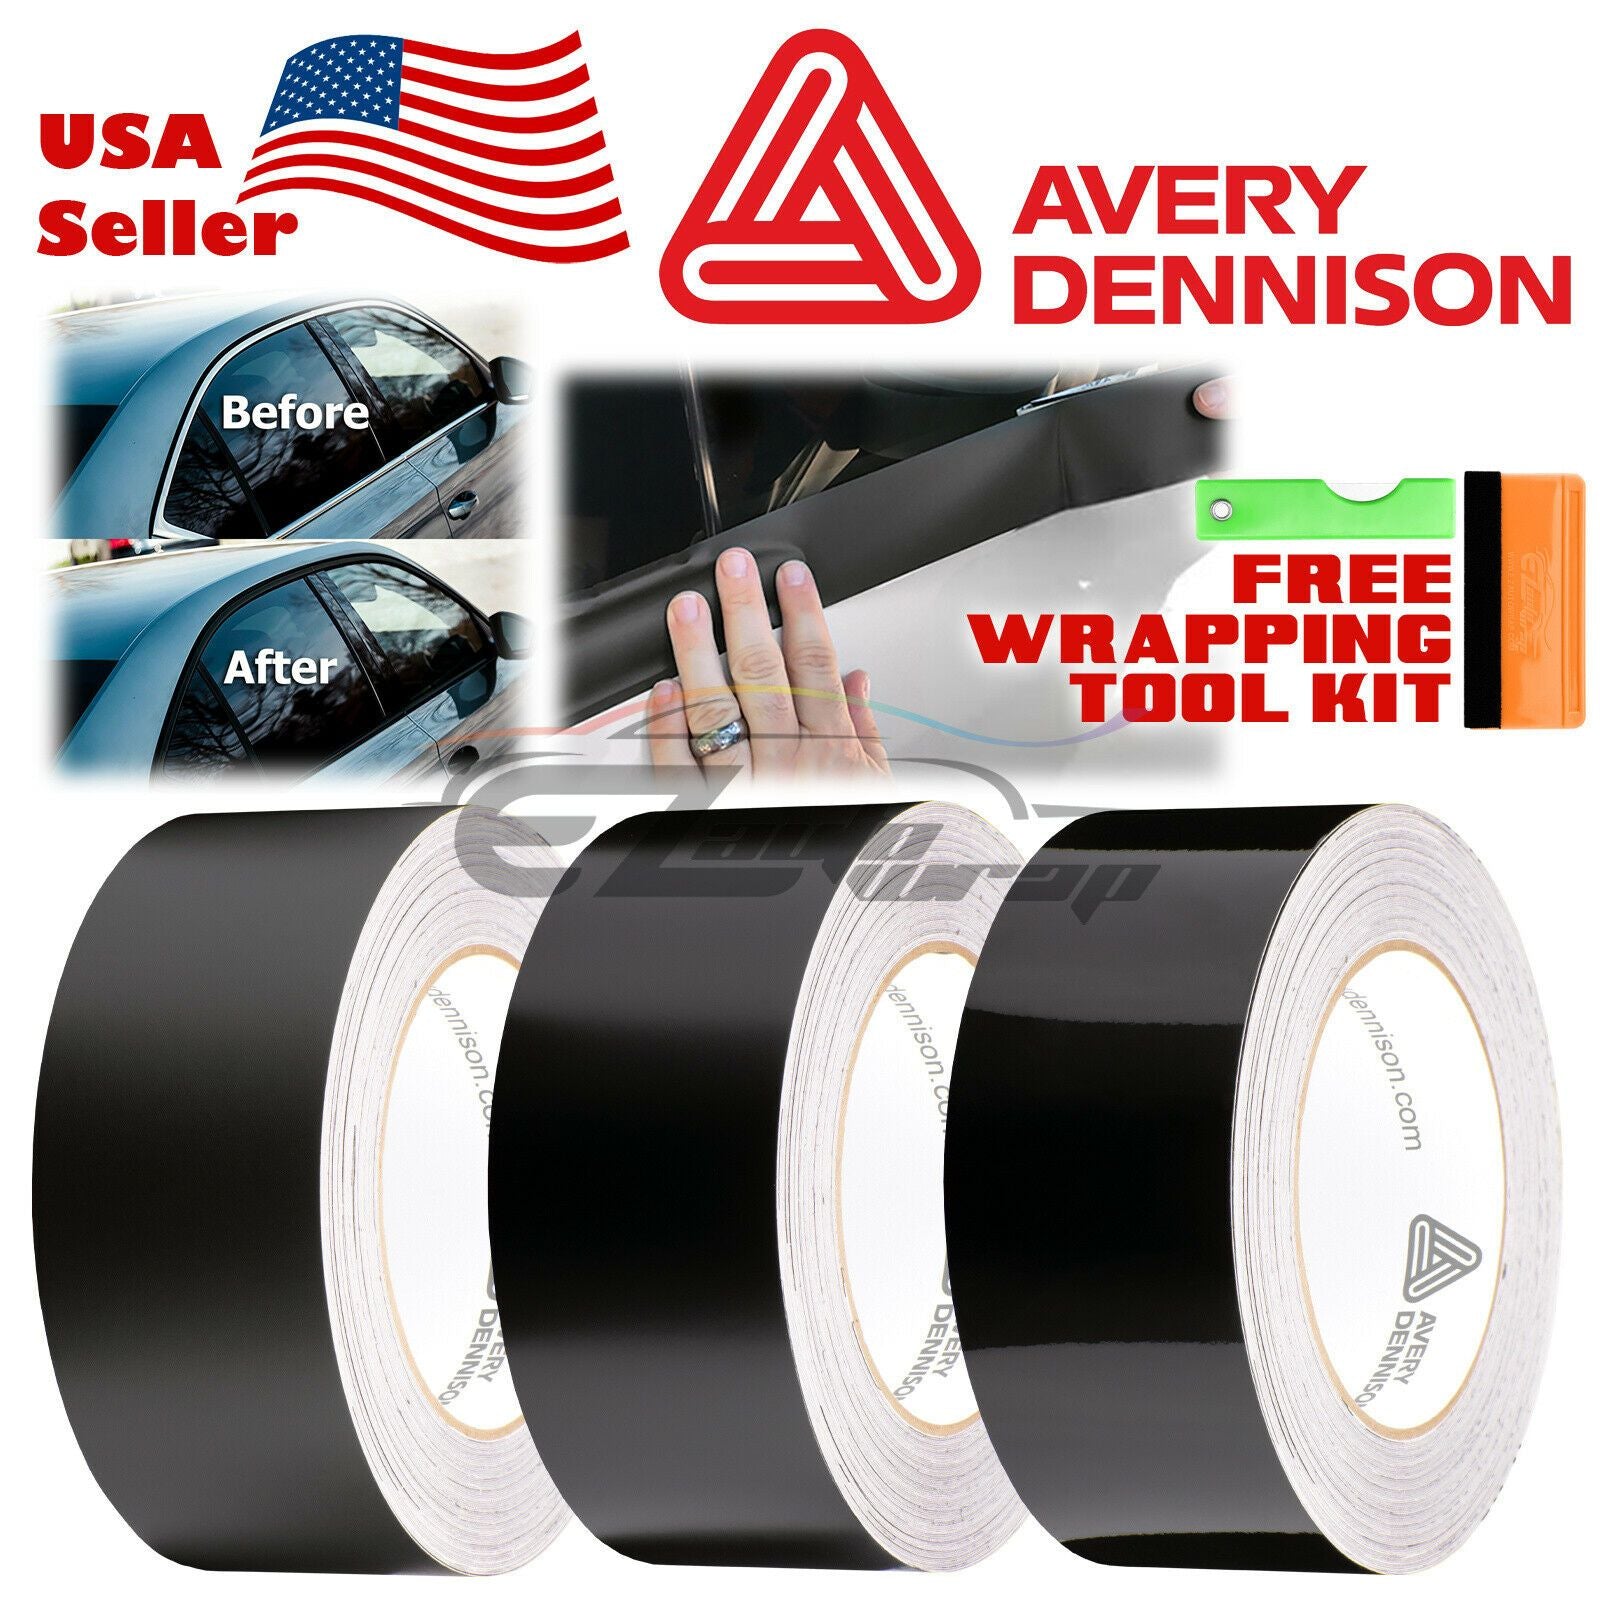 Avery Dennison™ Wrap Tool Kit